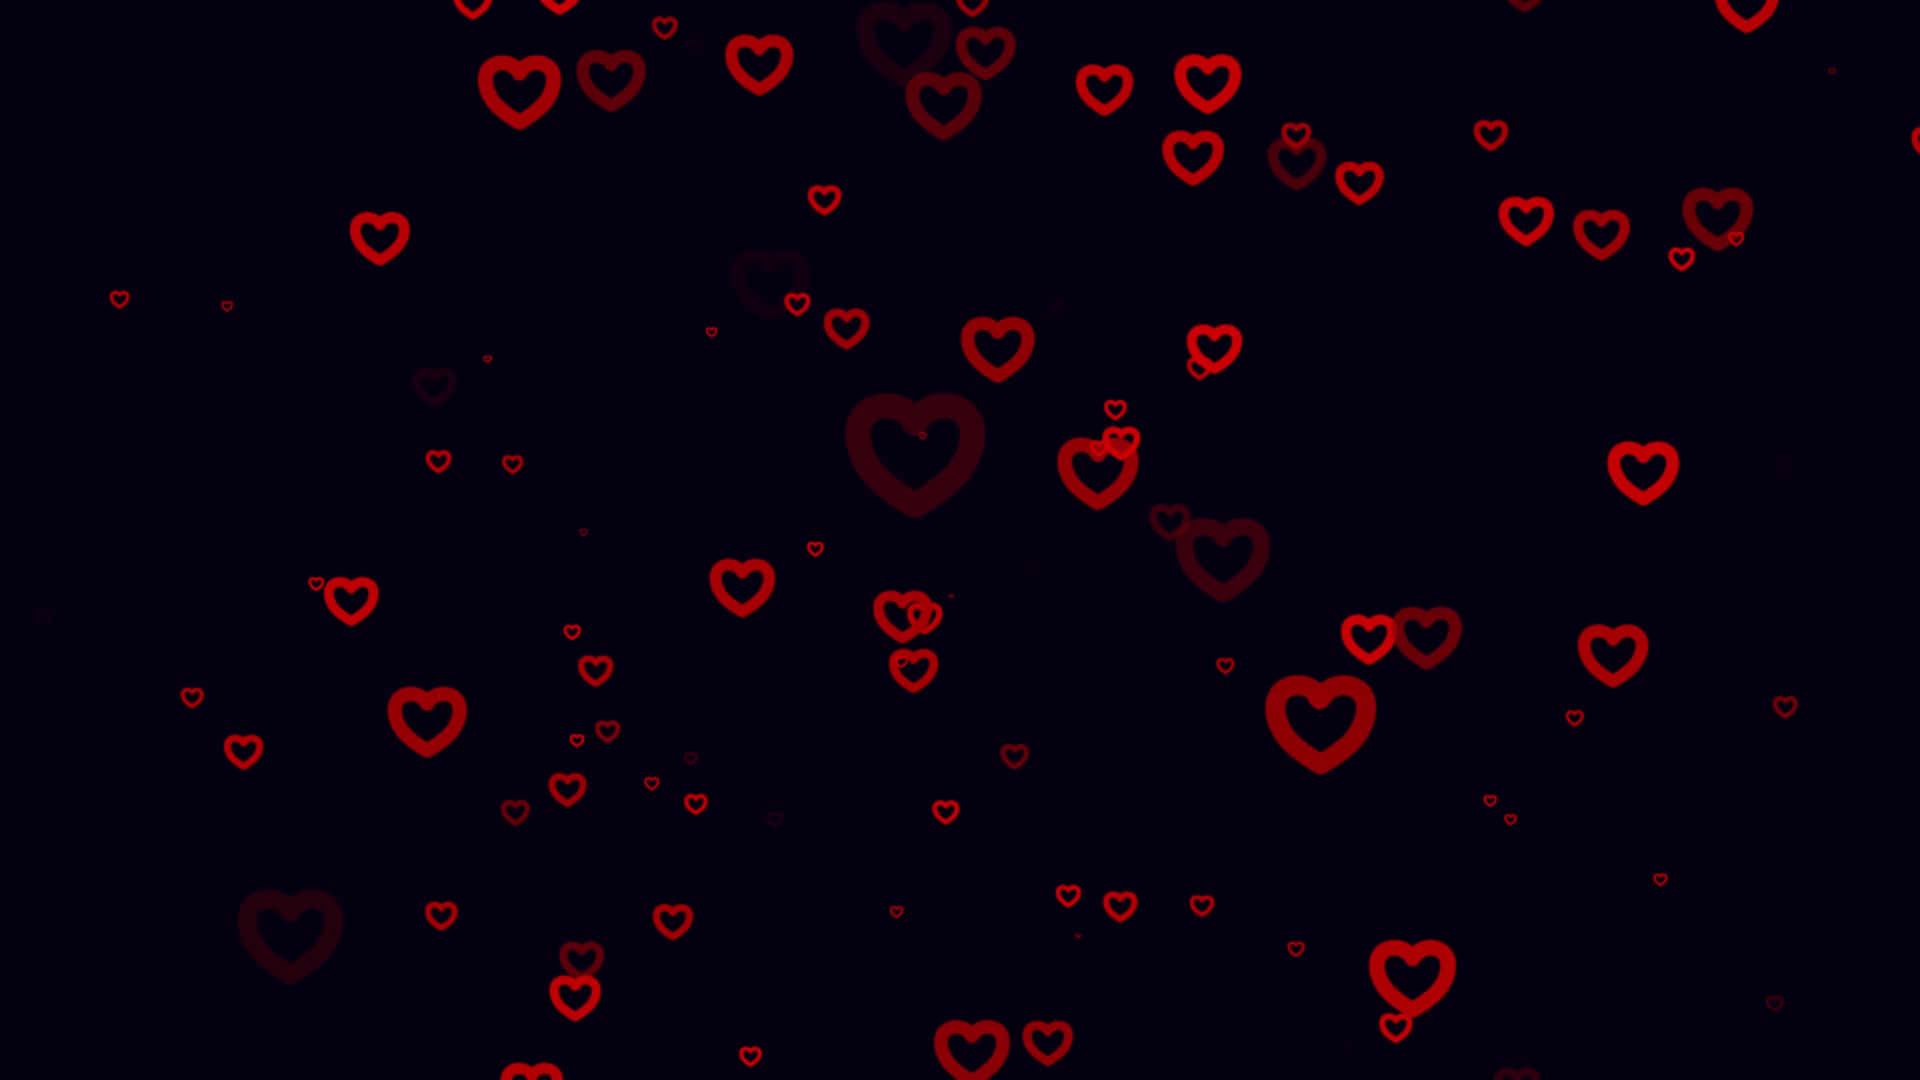 Einschwarzer Hintergrund Mit Roten Herzen Darauf. Wallpaper